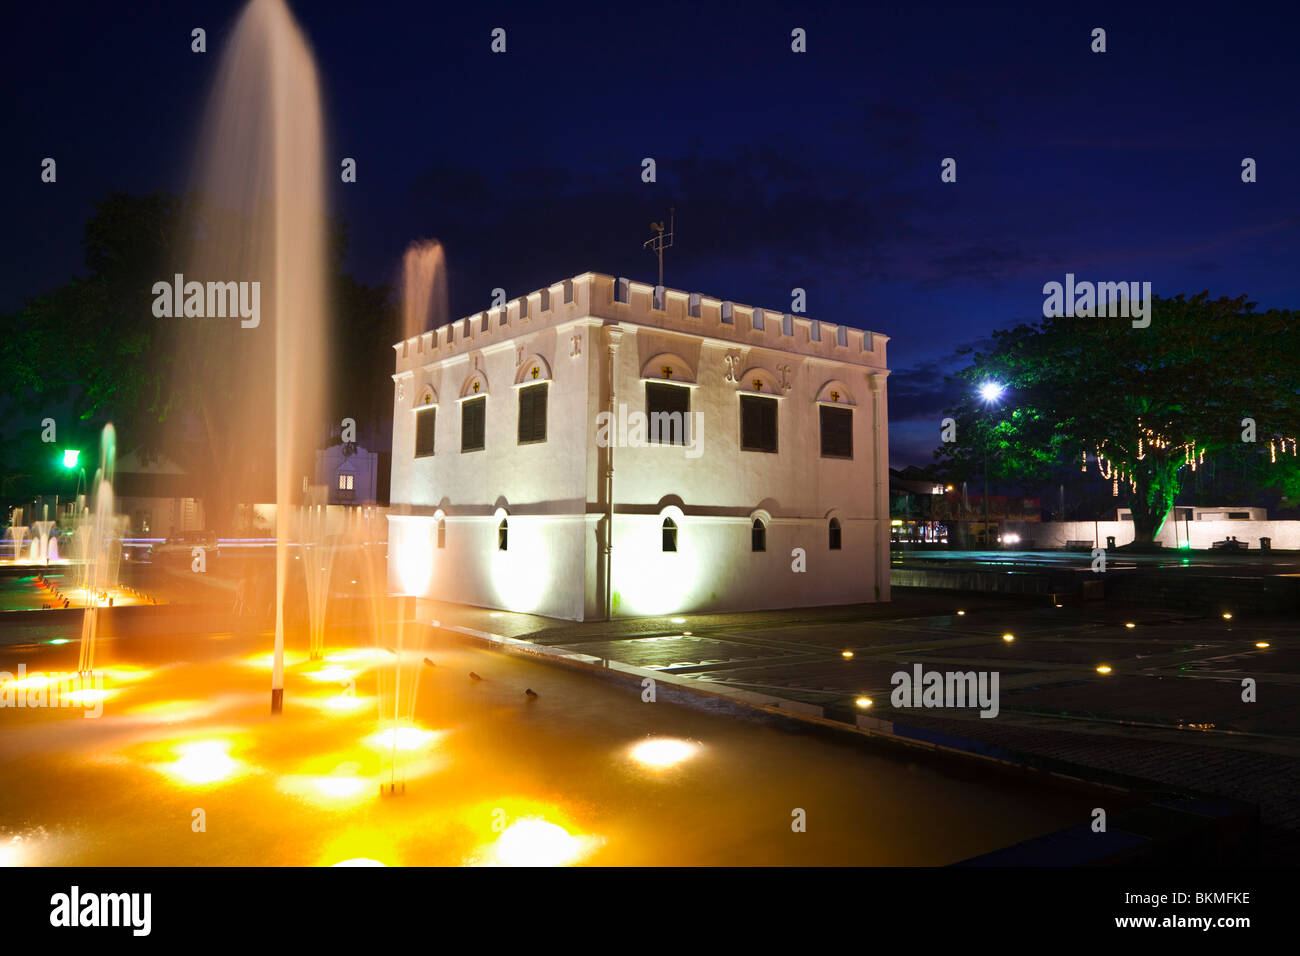 La tour carrée - construit par Charles Brooke en 1879 comme un fort - illuminée la nuit. Kuching, Sarawak, Bornéo, Malaisie. Banque D'Images